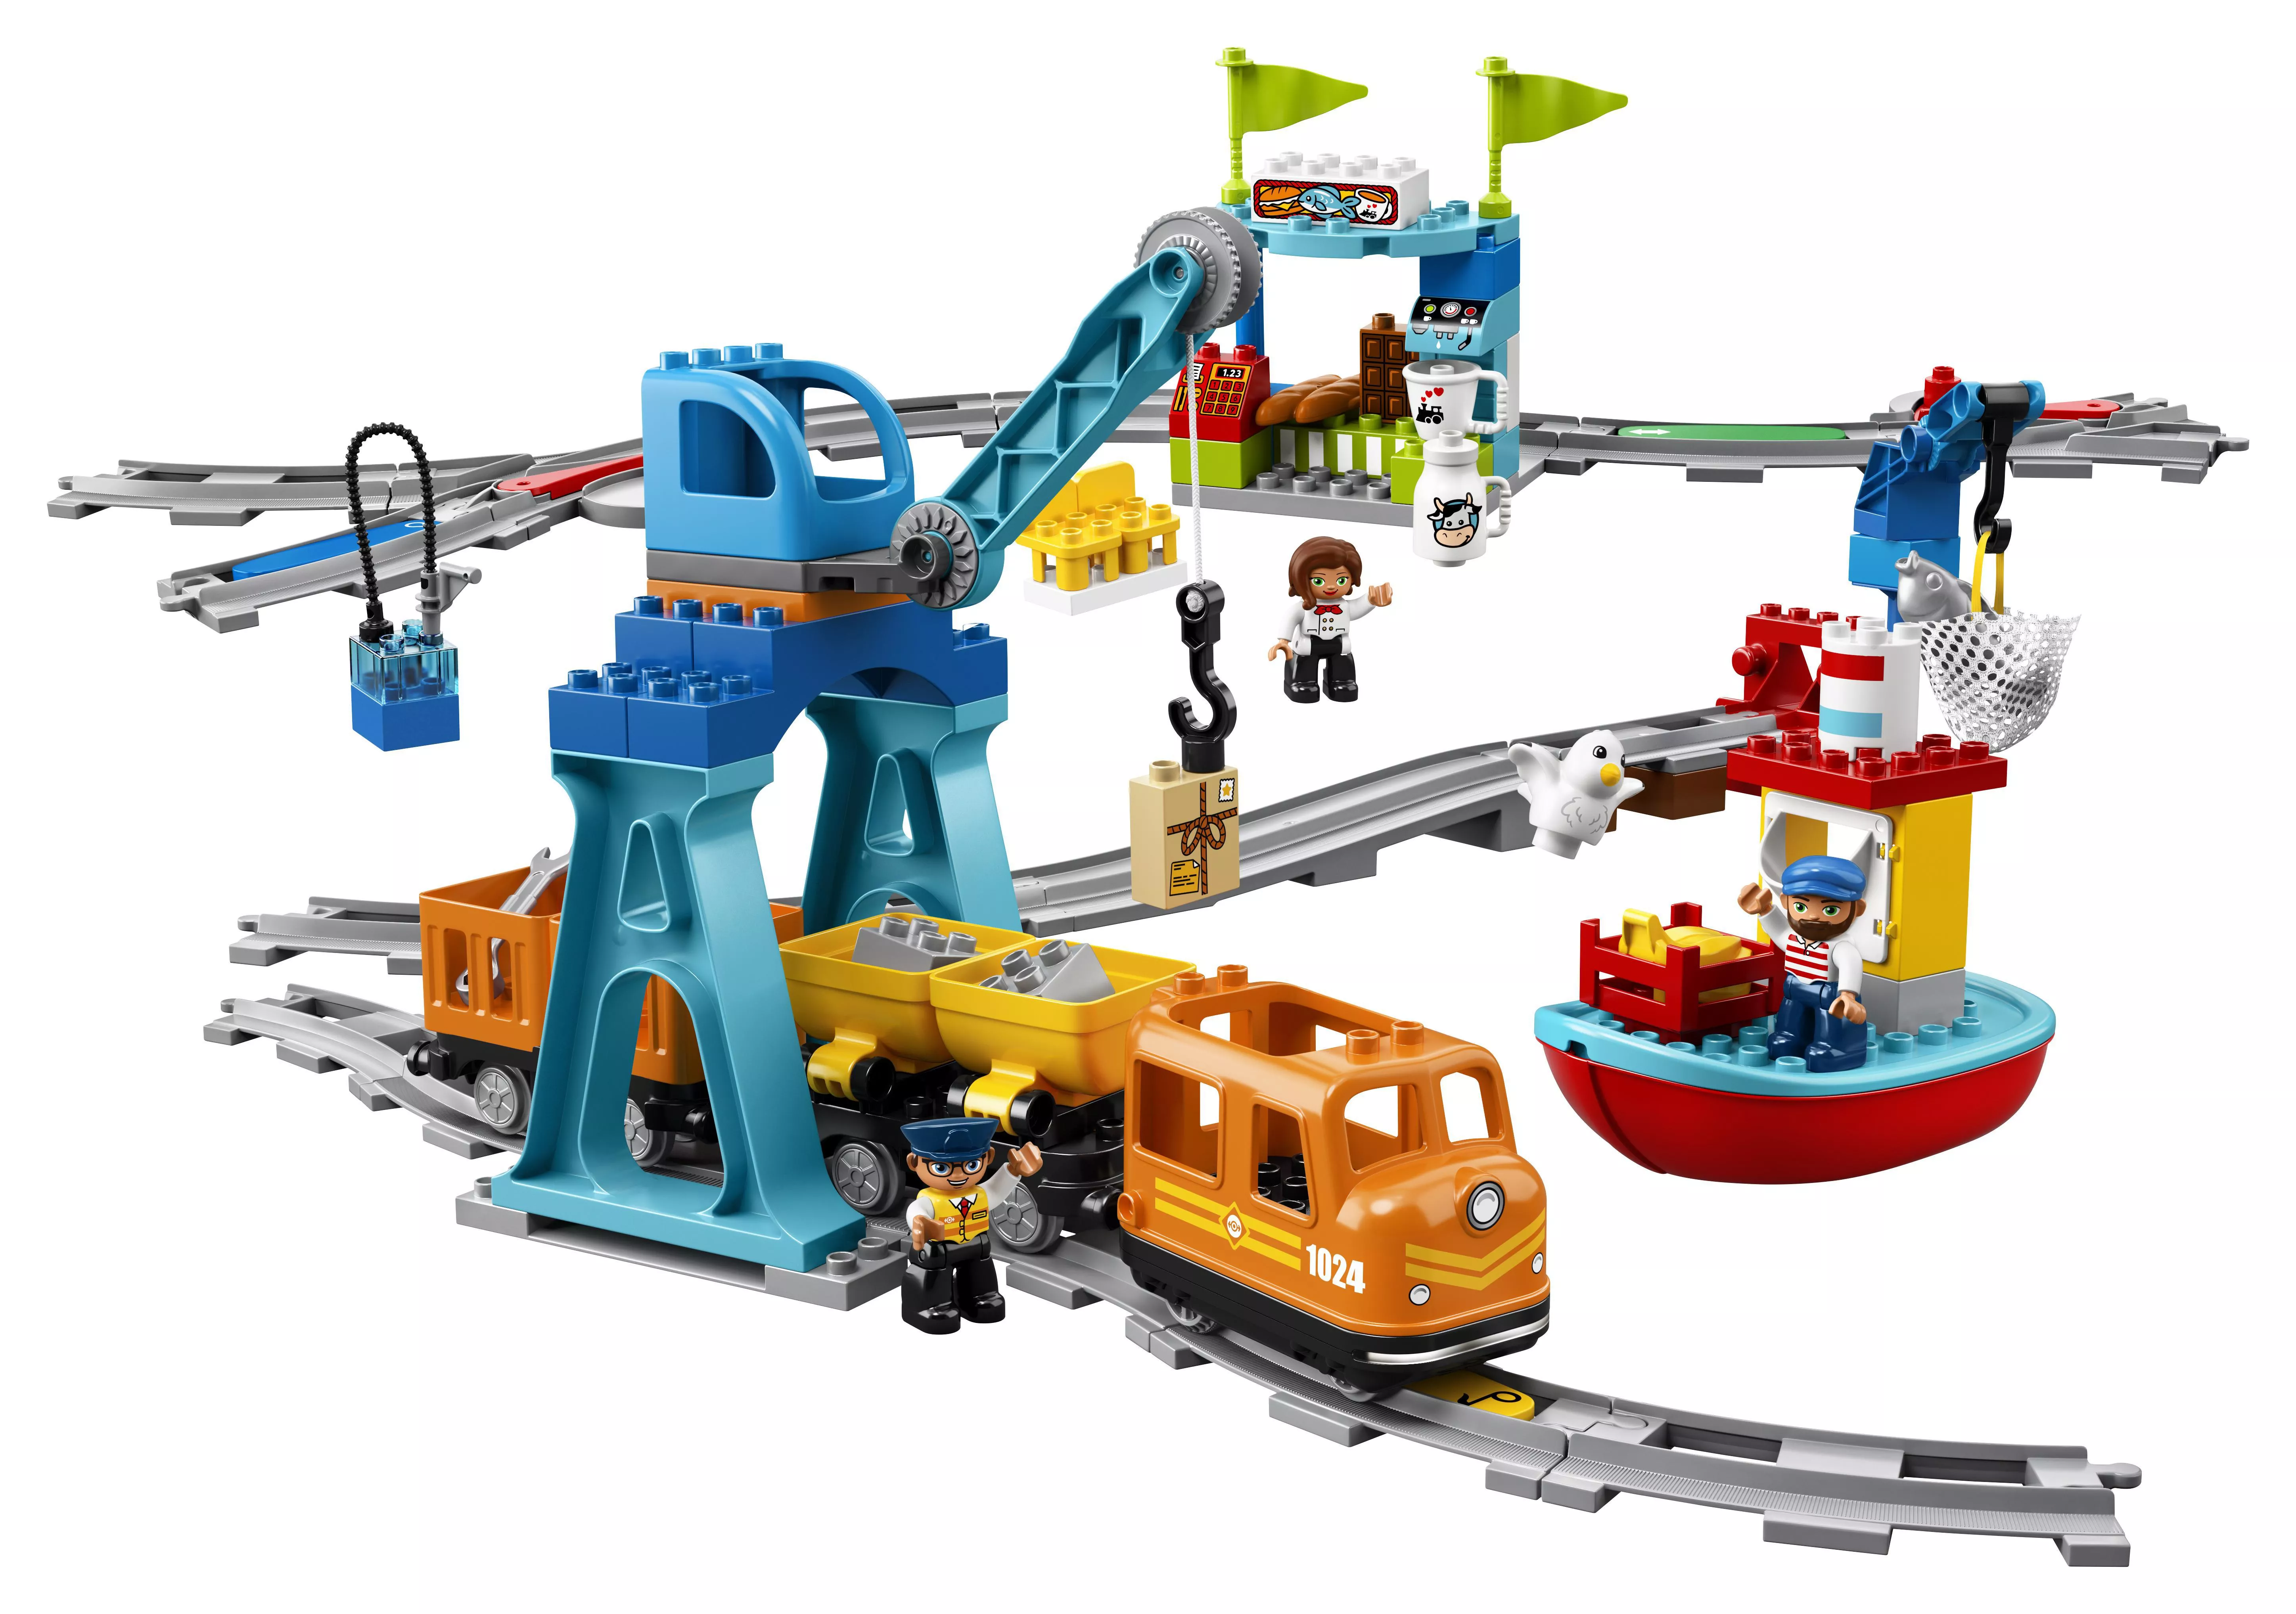 LEGO DUPLO Güterzug